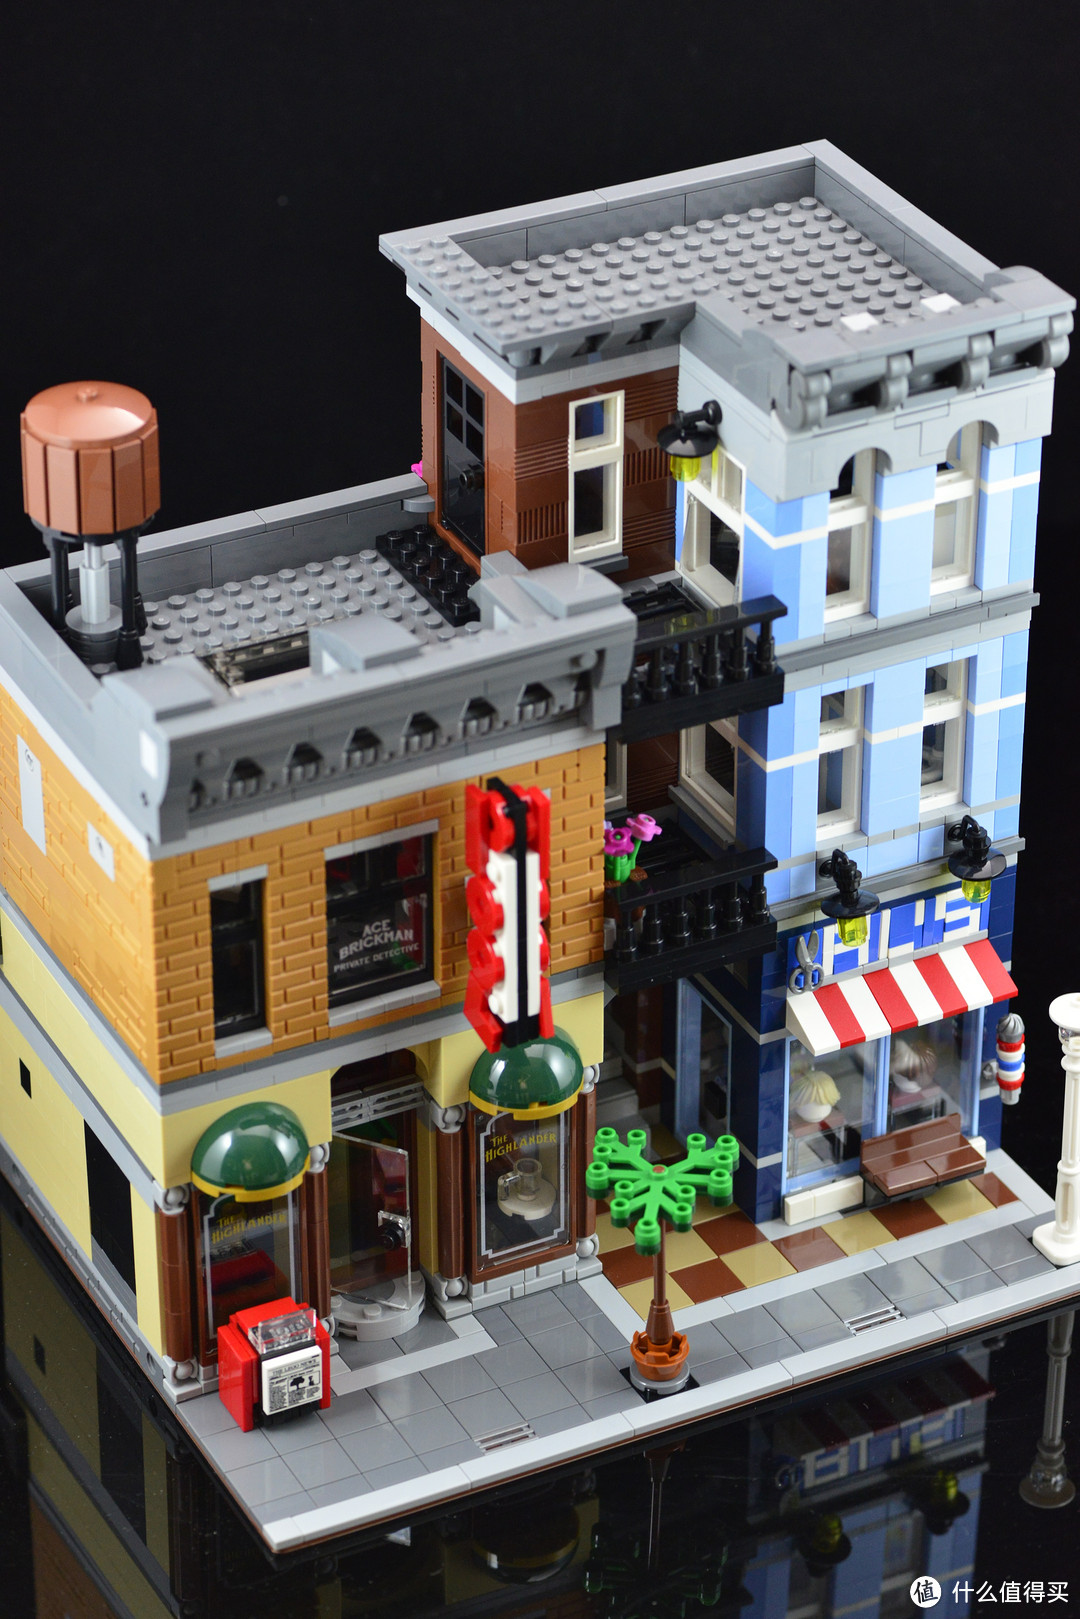 关于 lego 乐高 creator 街景系列 带给我的惊喜(末尾附有彩蛋)